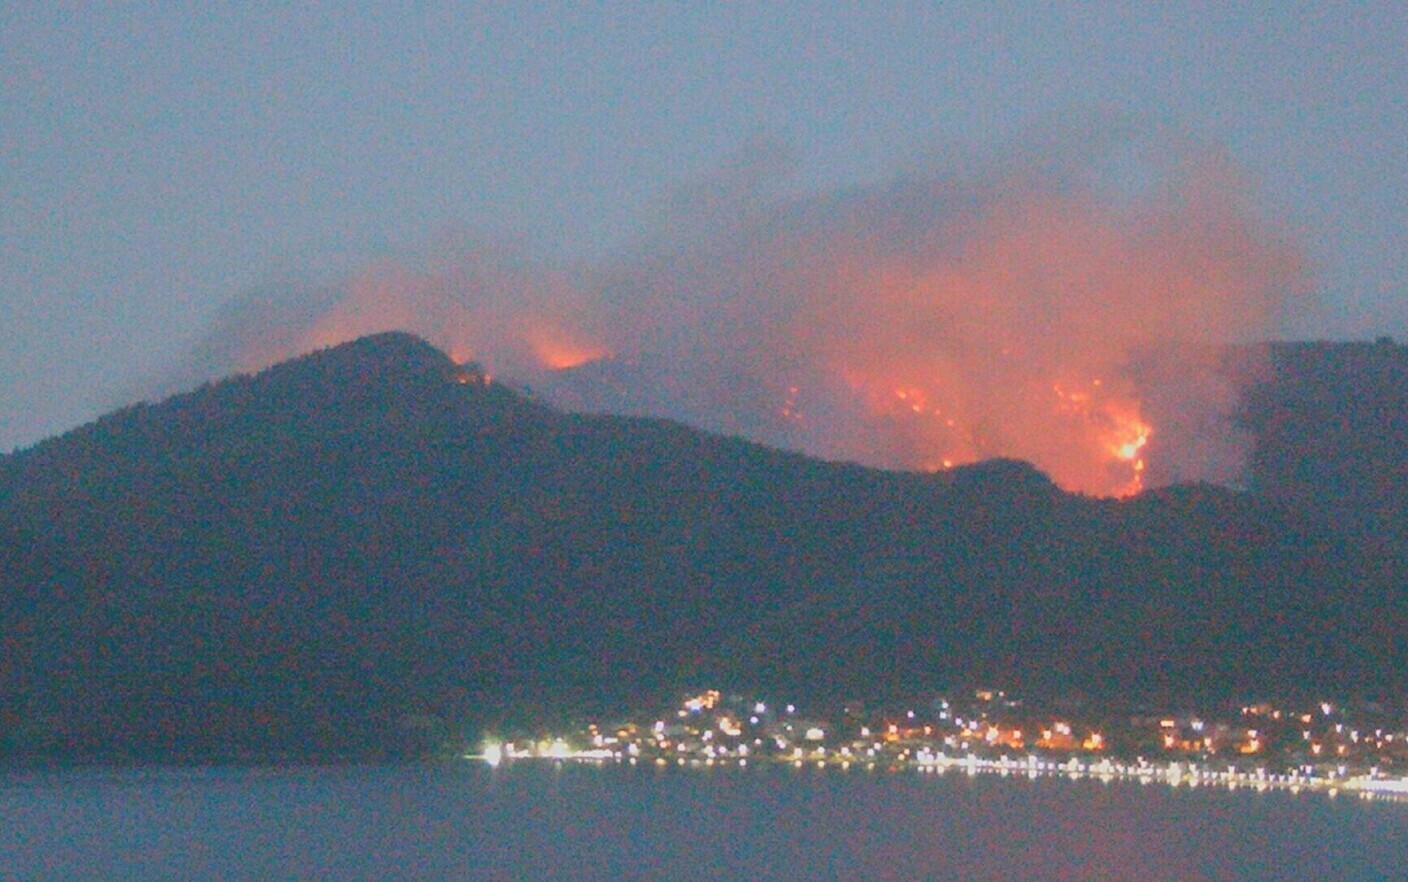 Η δασική πυρκαγιά στο νησί της Θάσου ξεκίνησε επίτηδες από συνταξιούχο, αναφέρουν ελληνικά ΜΜΕ